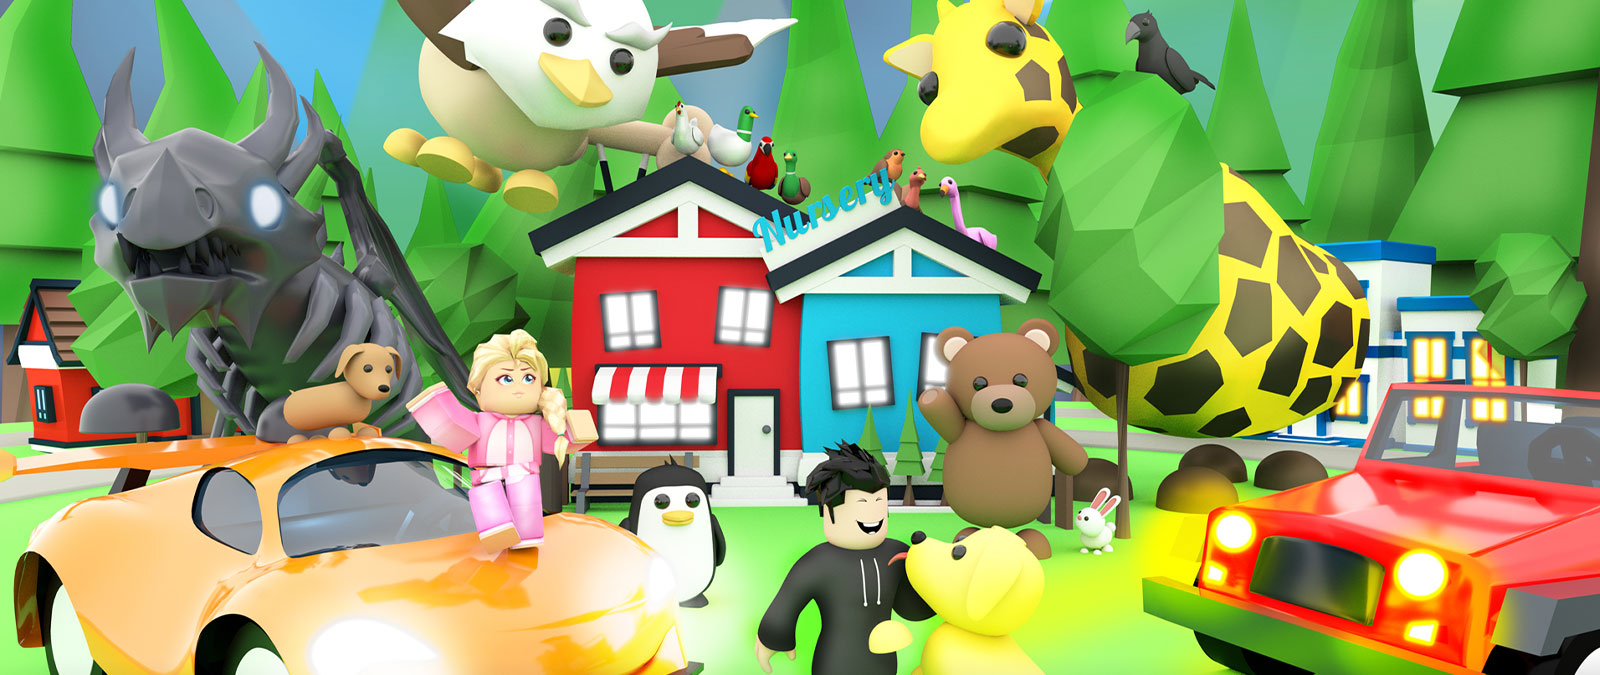 Χαρακτήρες και ζώα από το παιχνίδι Adopt me του Roblox